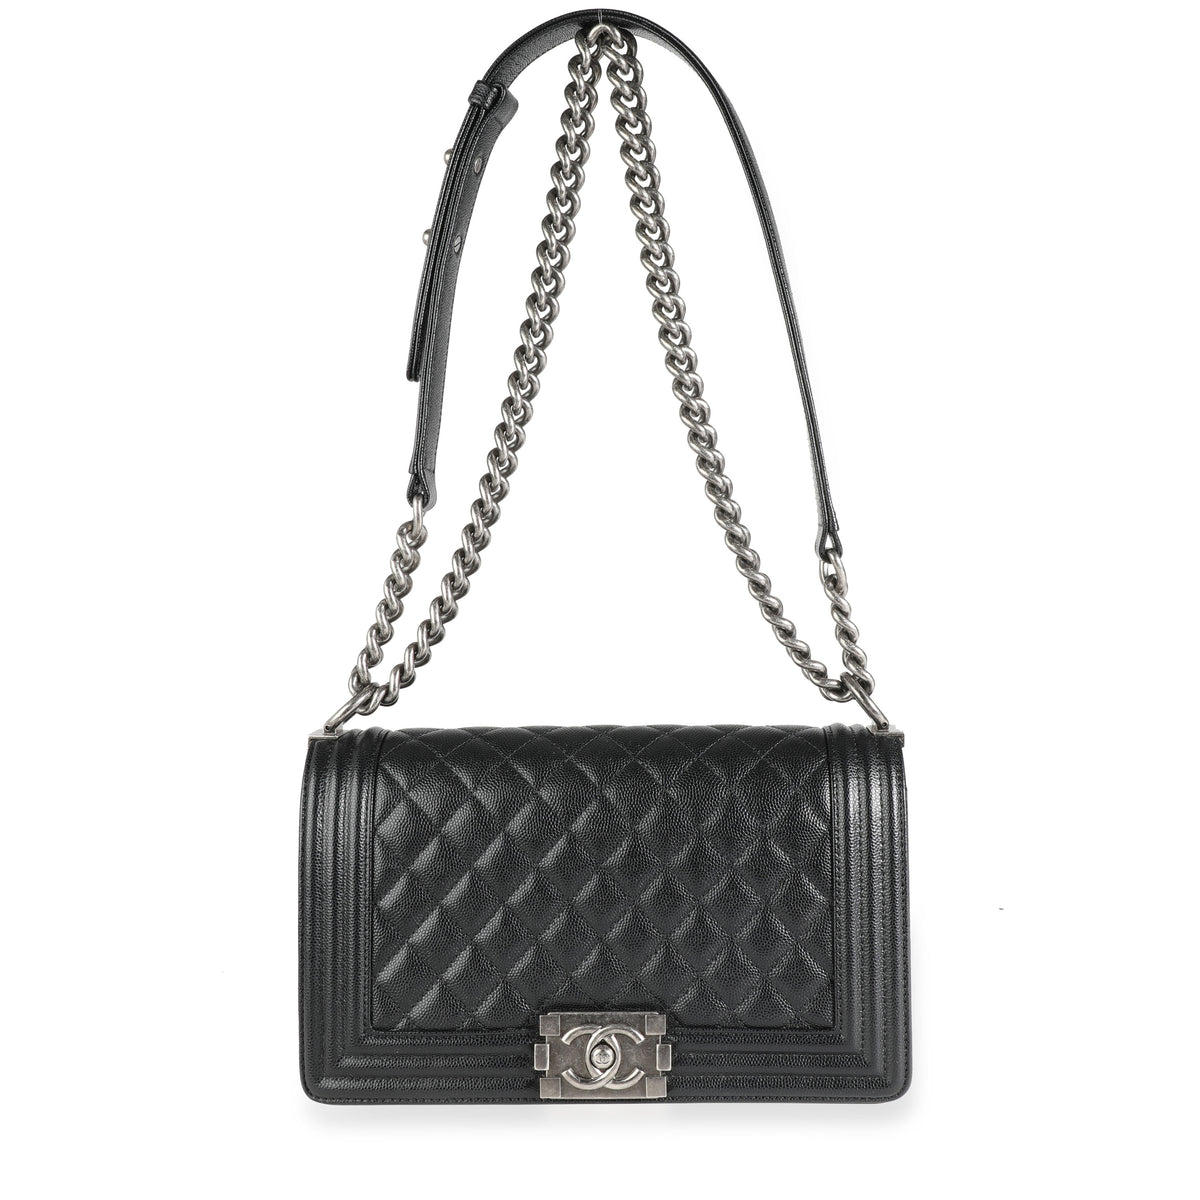 Chanel Black Caviar Quilted Old Medium Boy Bag, myGemma